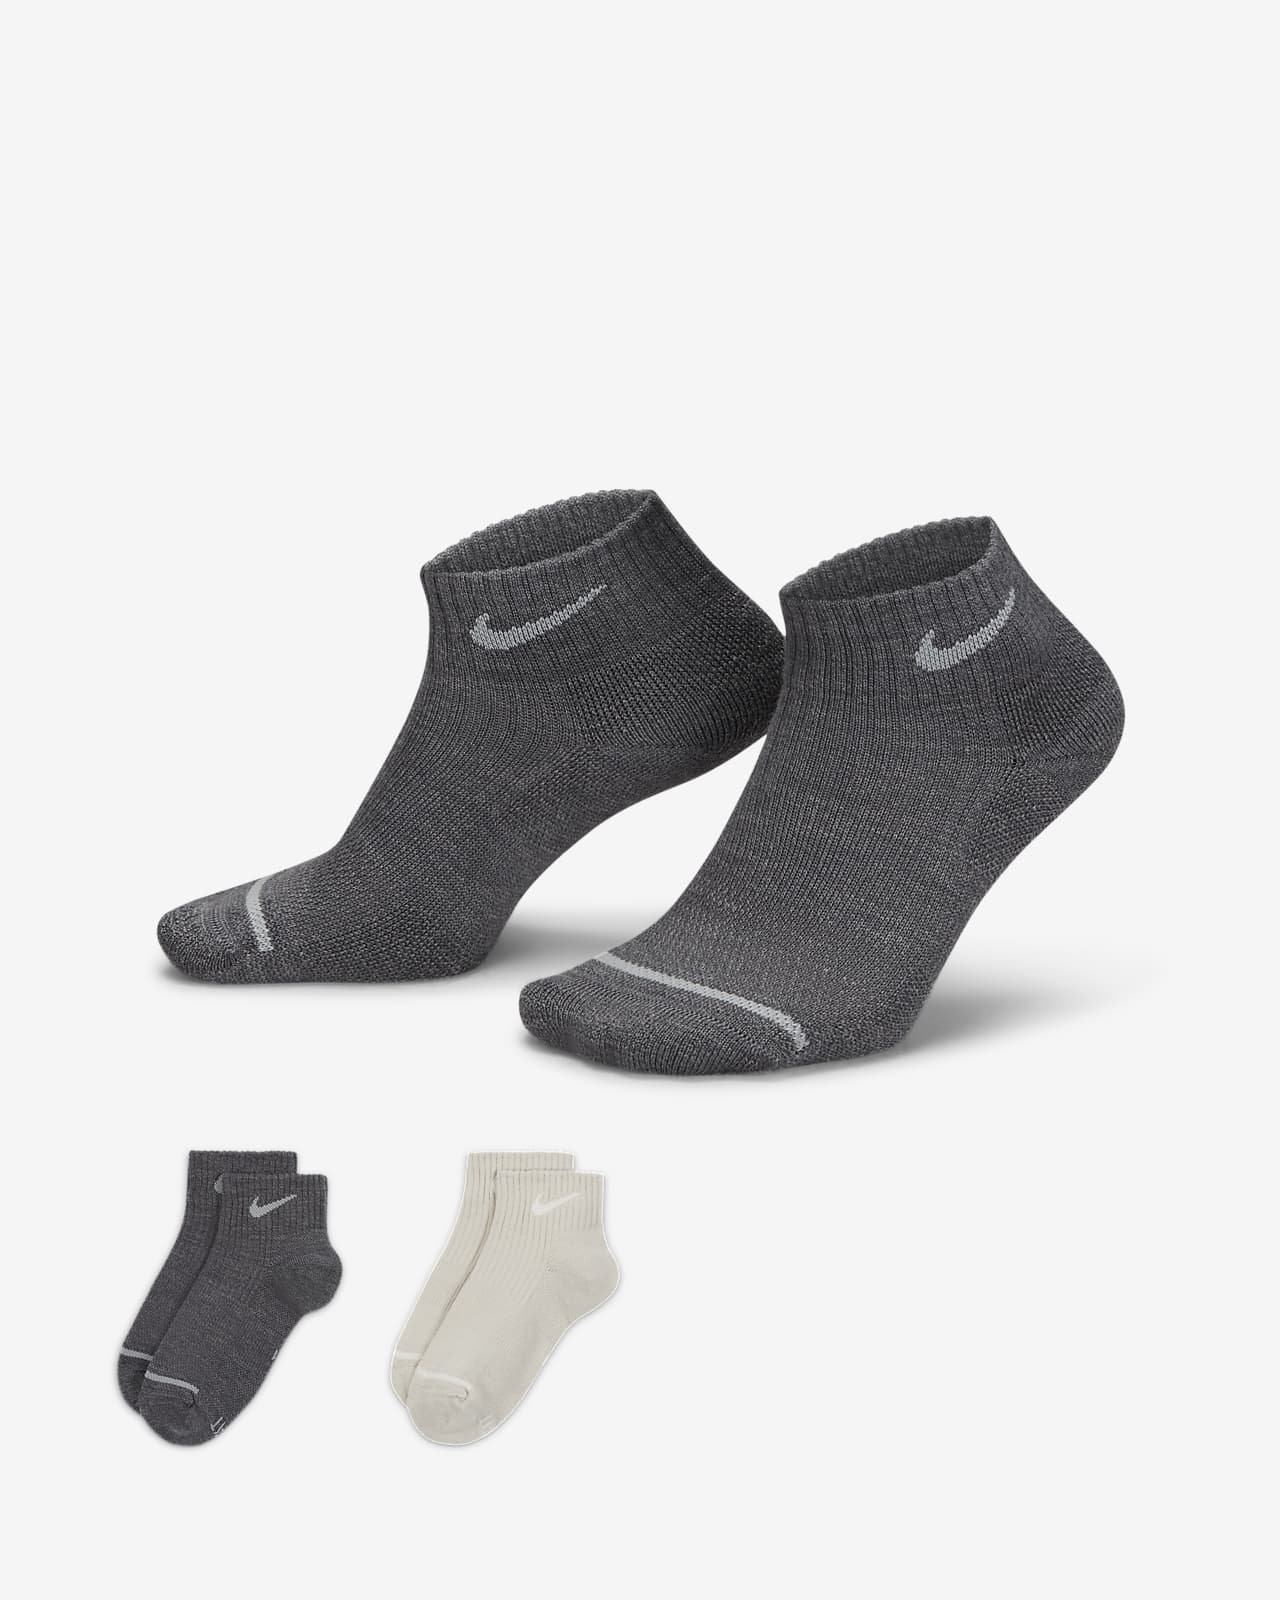 Calze alla caviglia ammortizzate Nike Everyday Wool (2 paia)